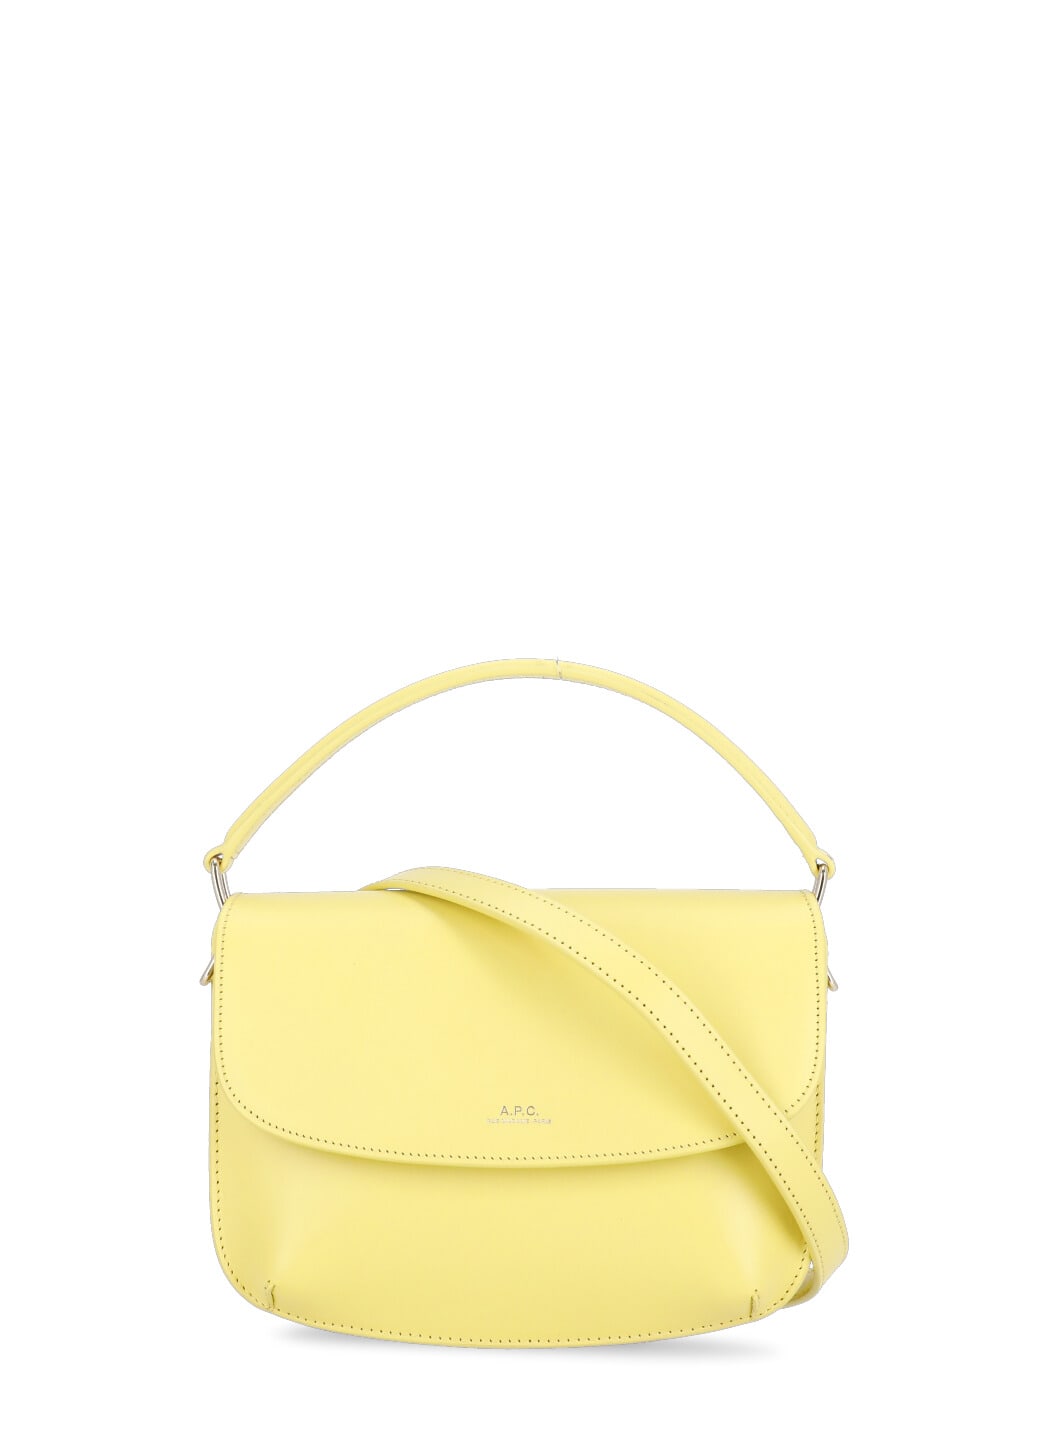 Apc Sarah Bag In Yellow